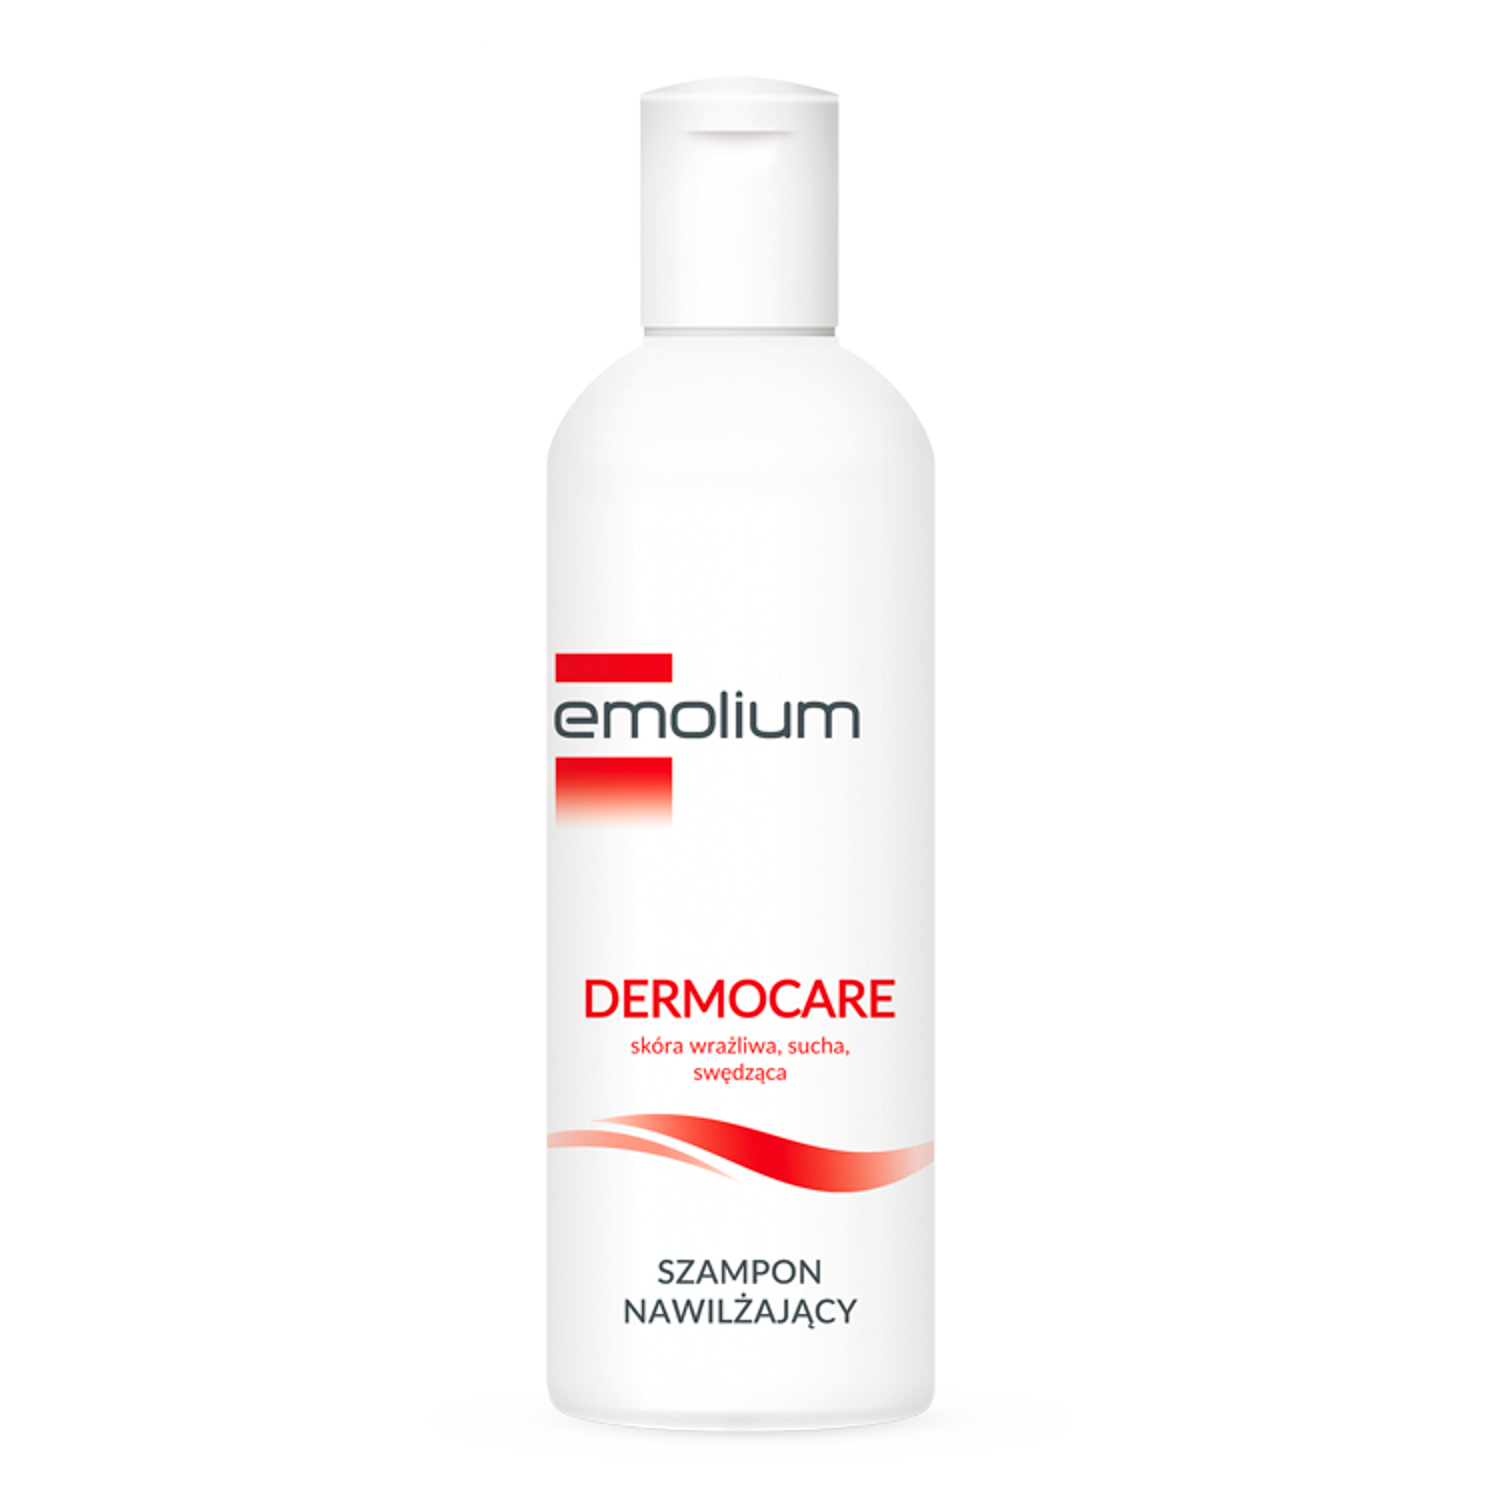 Emolium Dermocare увлажняющий шампунь для волос, 200 мл